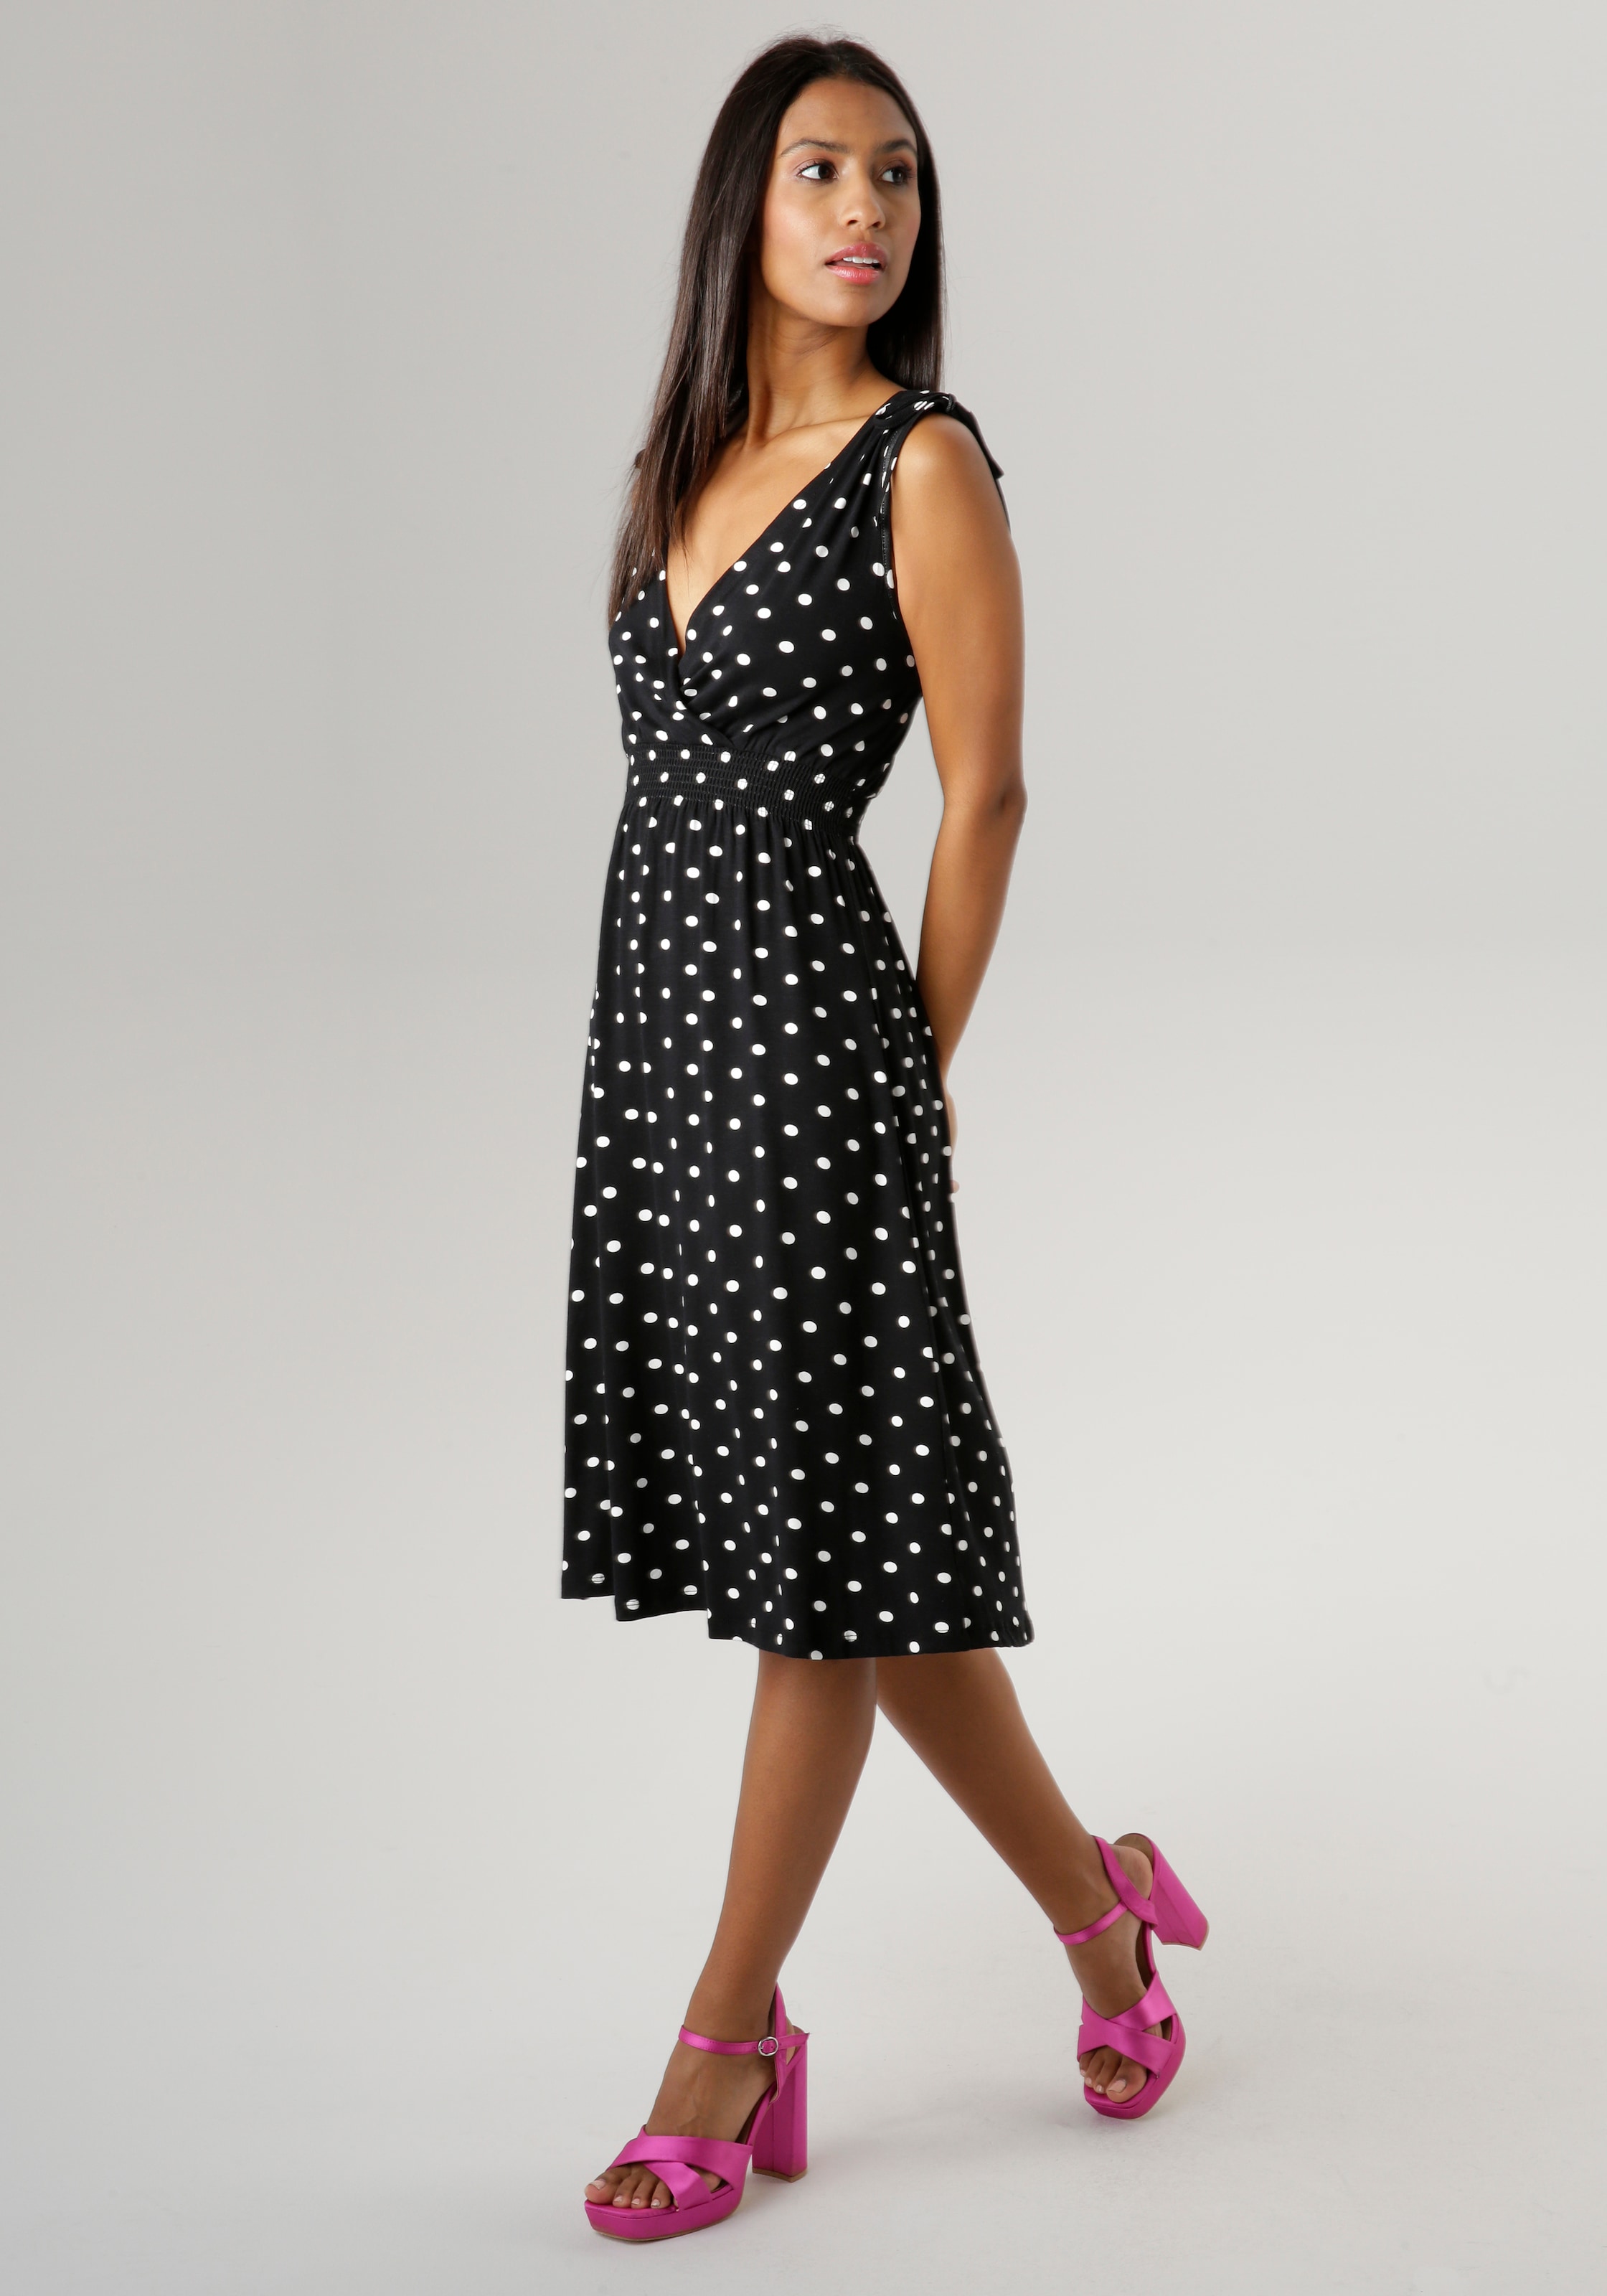 Raffung variierbarer Schultern - Sommerkleid, mit kaufen an SELECTED NEUE den Aniston KOLLEKTION